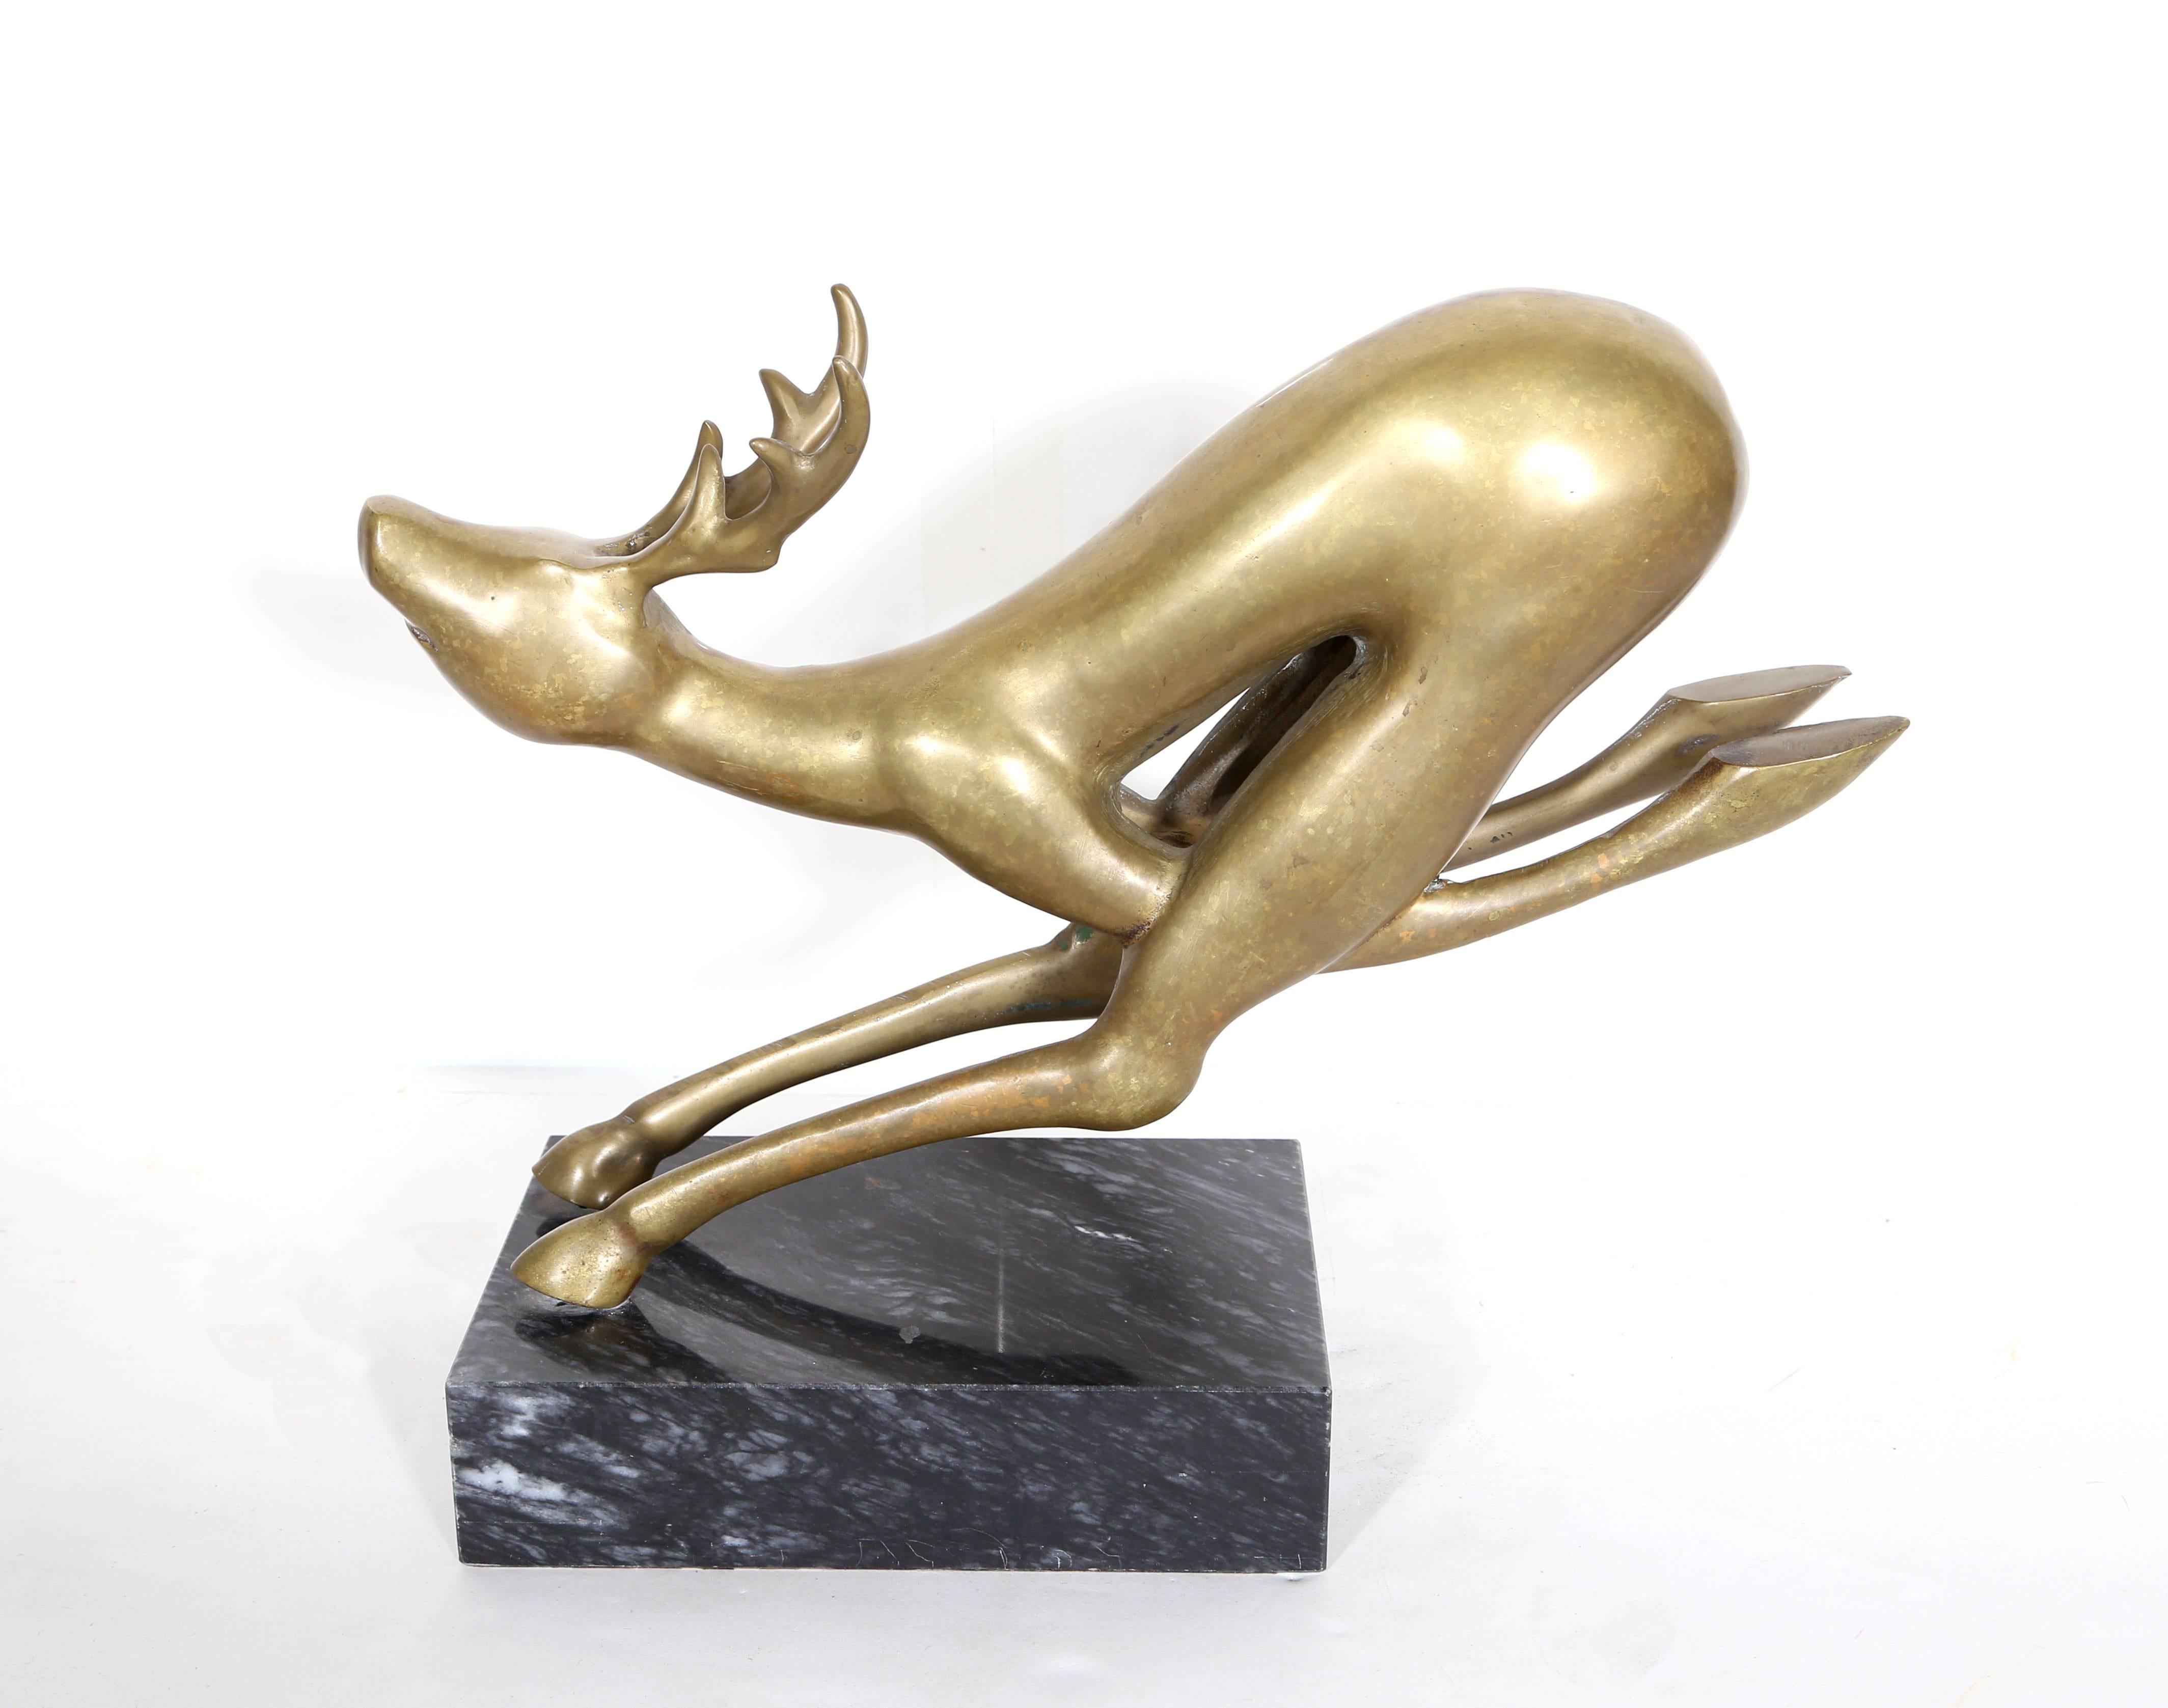 Hattakitkosol Somchai Figurative Sculpture - Gold Reindeer, Bronze Sculpture by Mattakitkosol Somchai